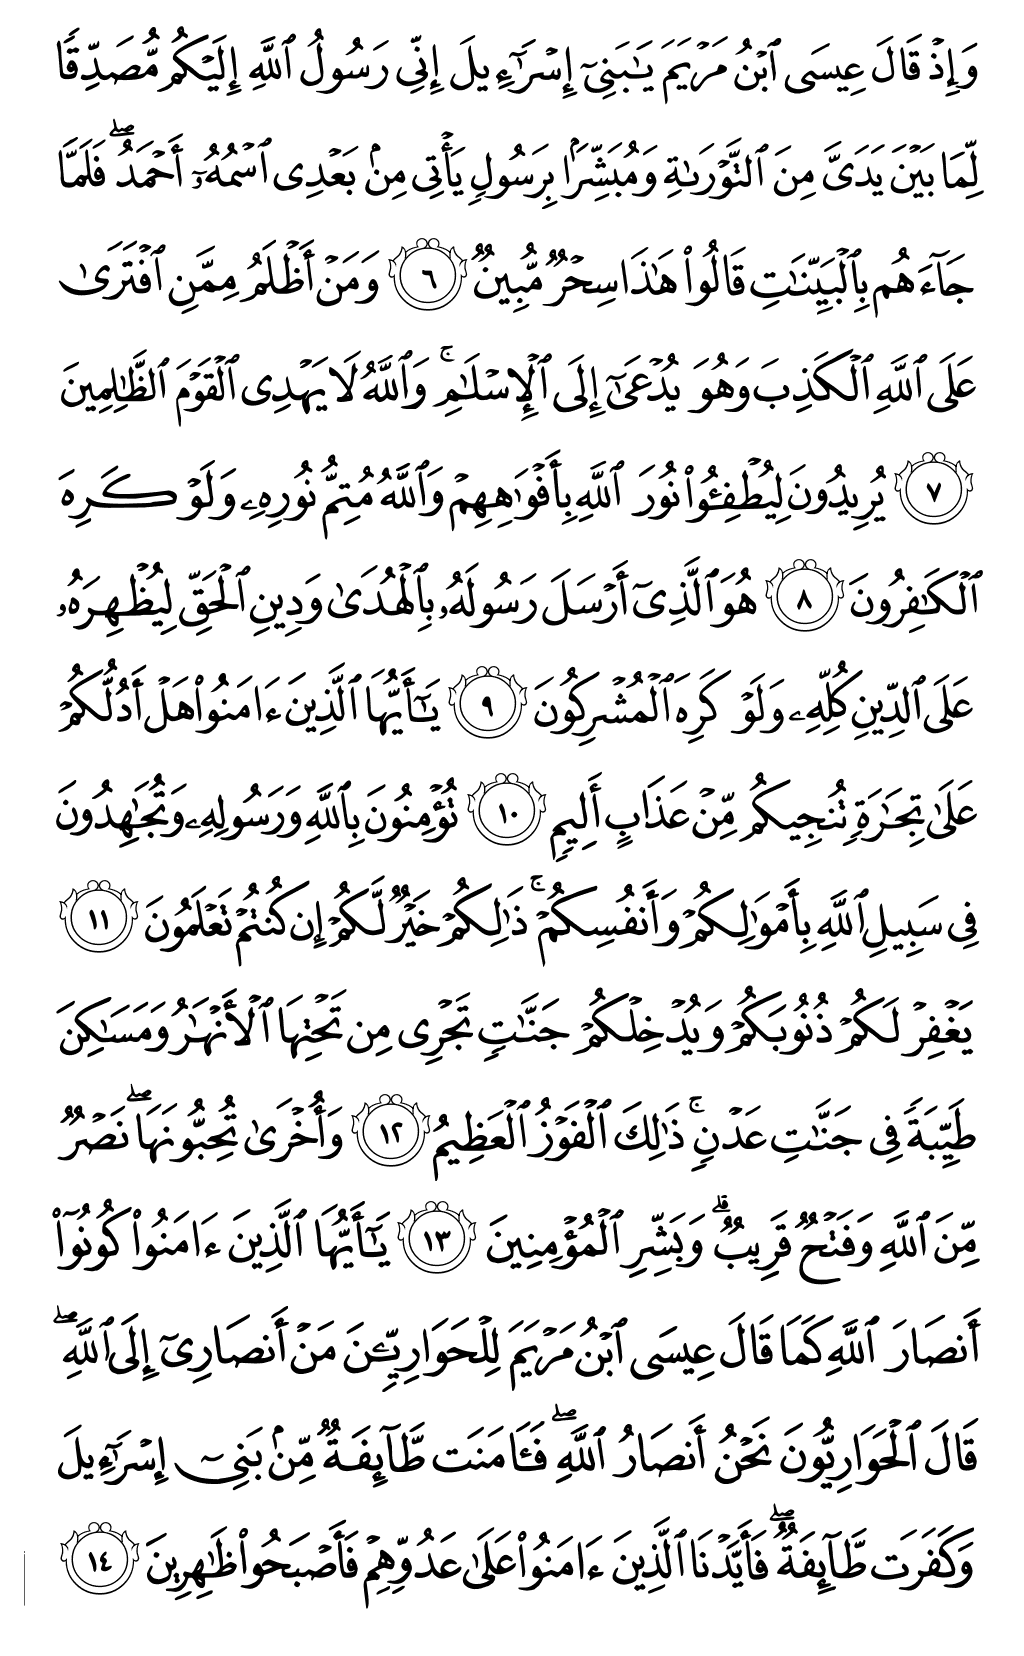 الصفحة رقم 552 من القرآن الكريم